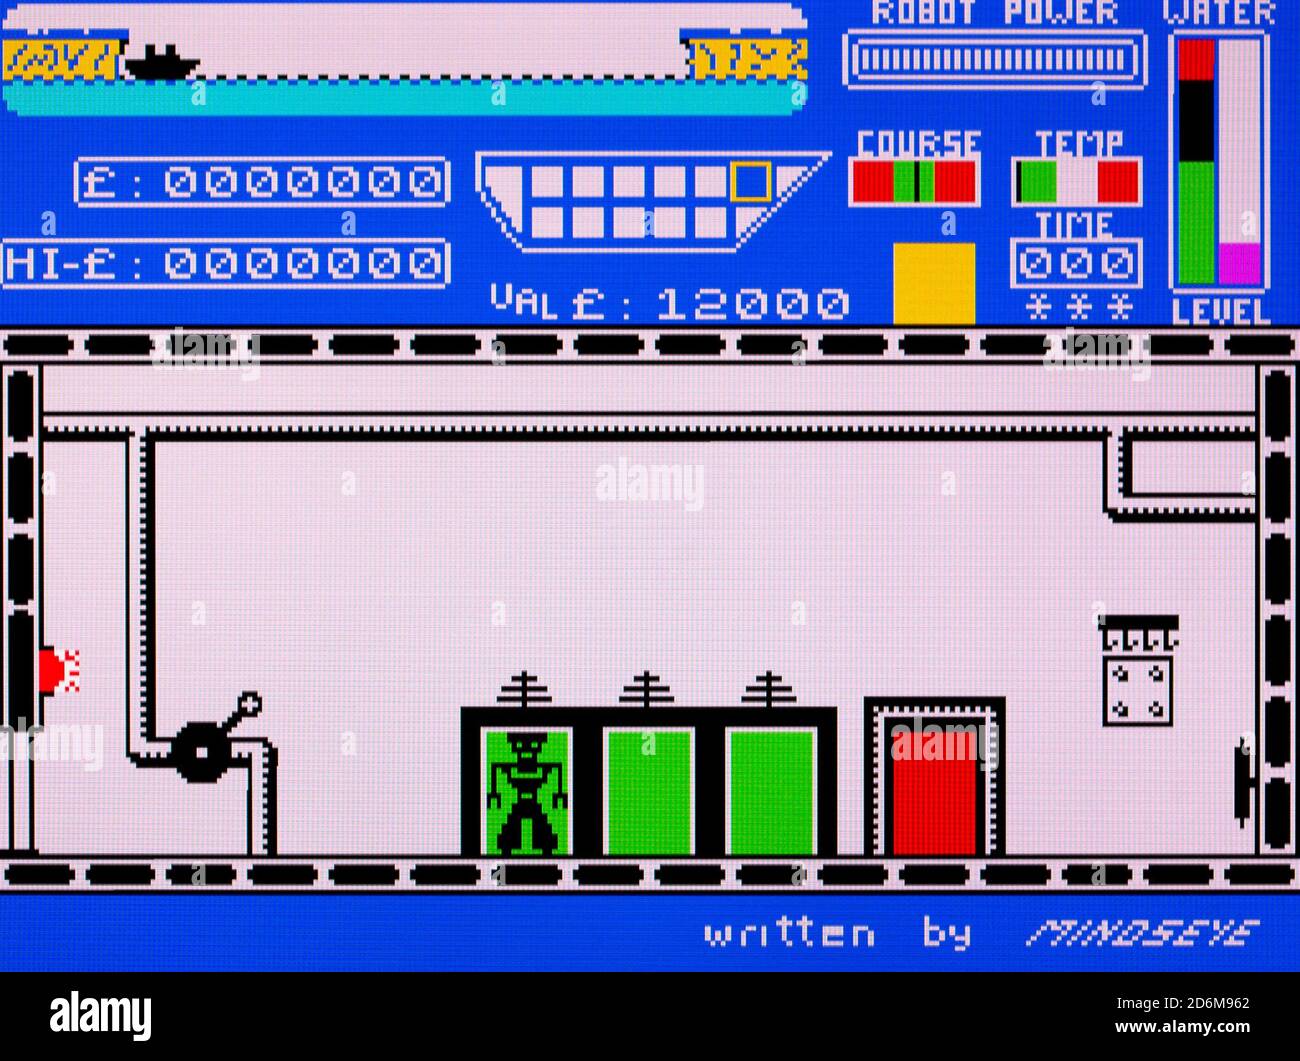 Les pires choses se produisent à la mer - Sinclair ZX Spectrum Videogame - usage éditorial seulement Banque D'Images